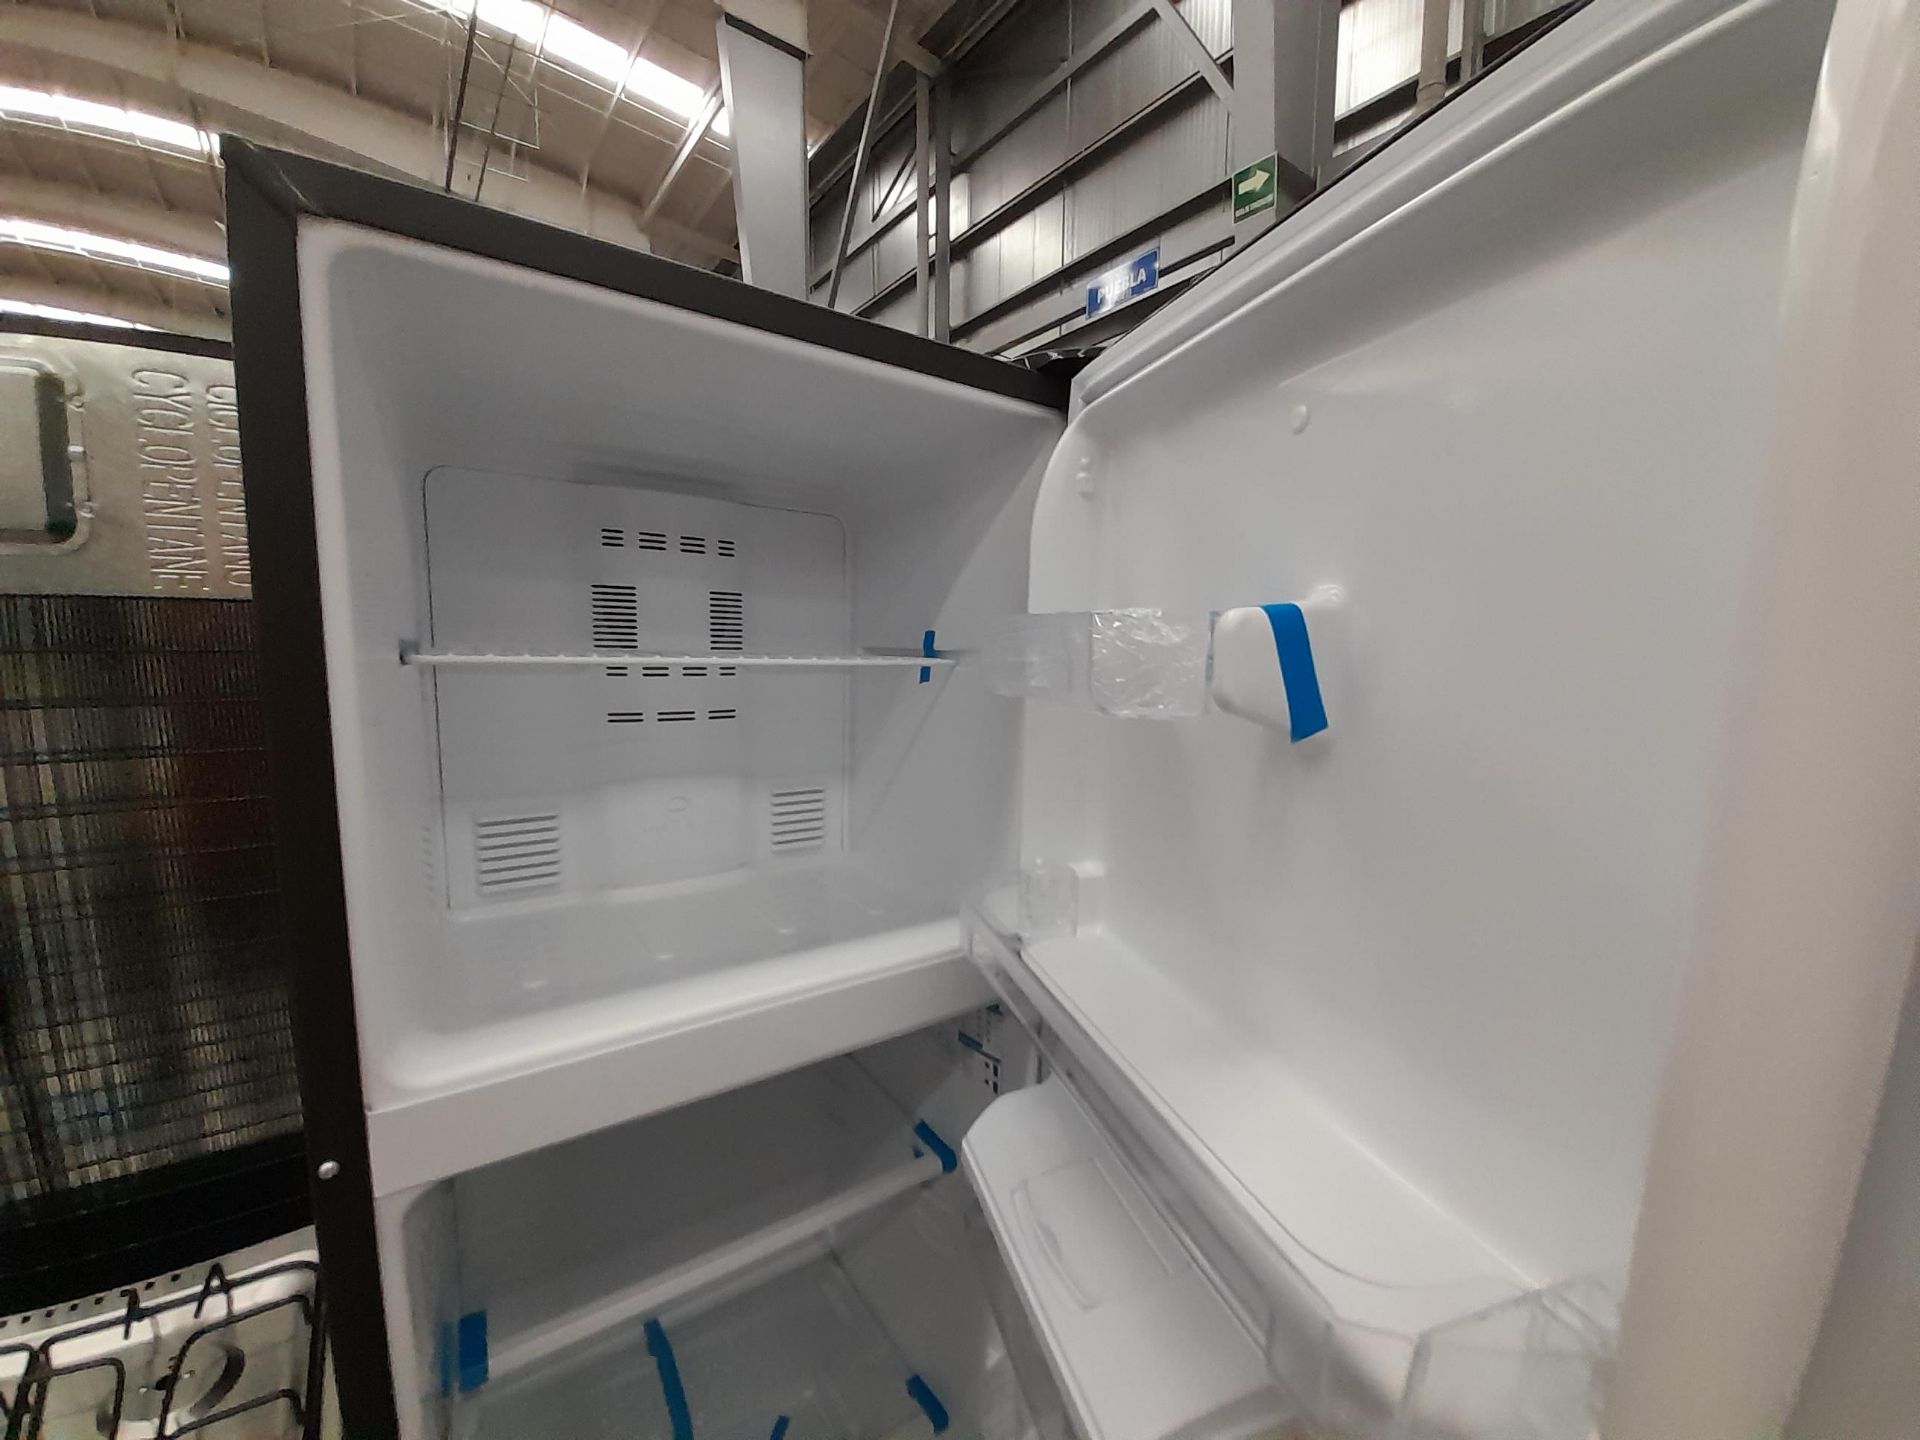 Lote de 2 refrigeradores Contiene: 1 Refrigerador Con Dispensador De Agua Marca MABE, Modelo RMA250 - Image 4 of 8